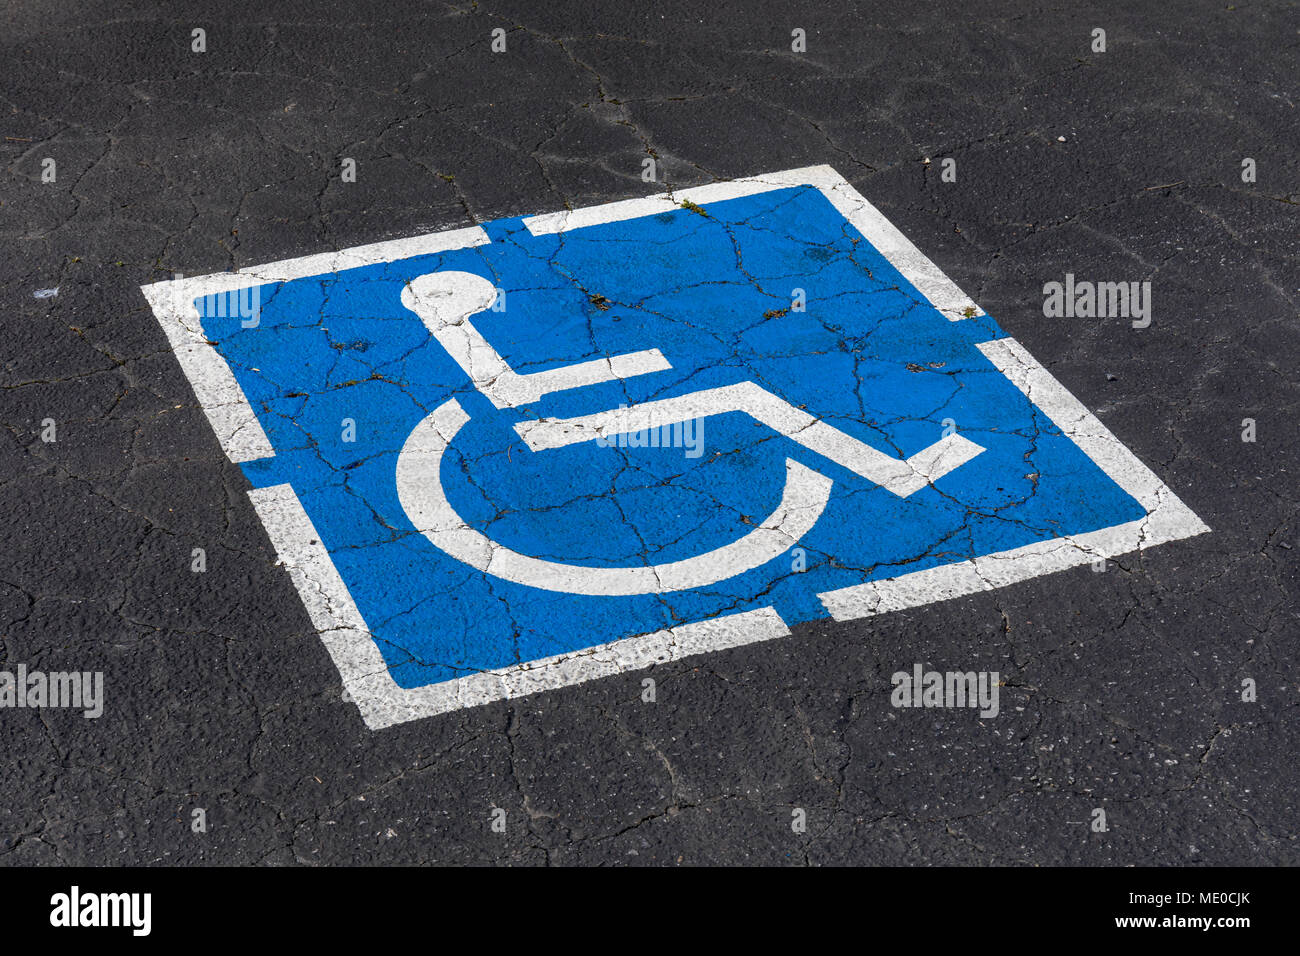 Disabled parking sign on asphalt Stock Photo